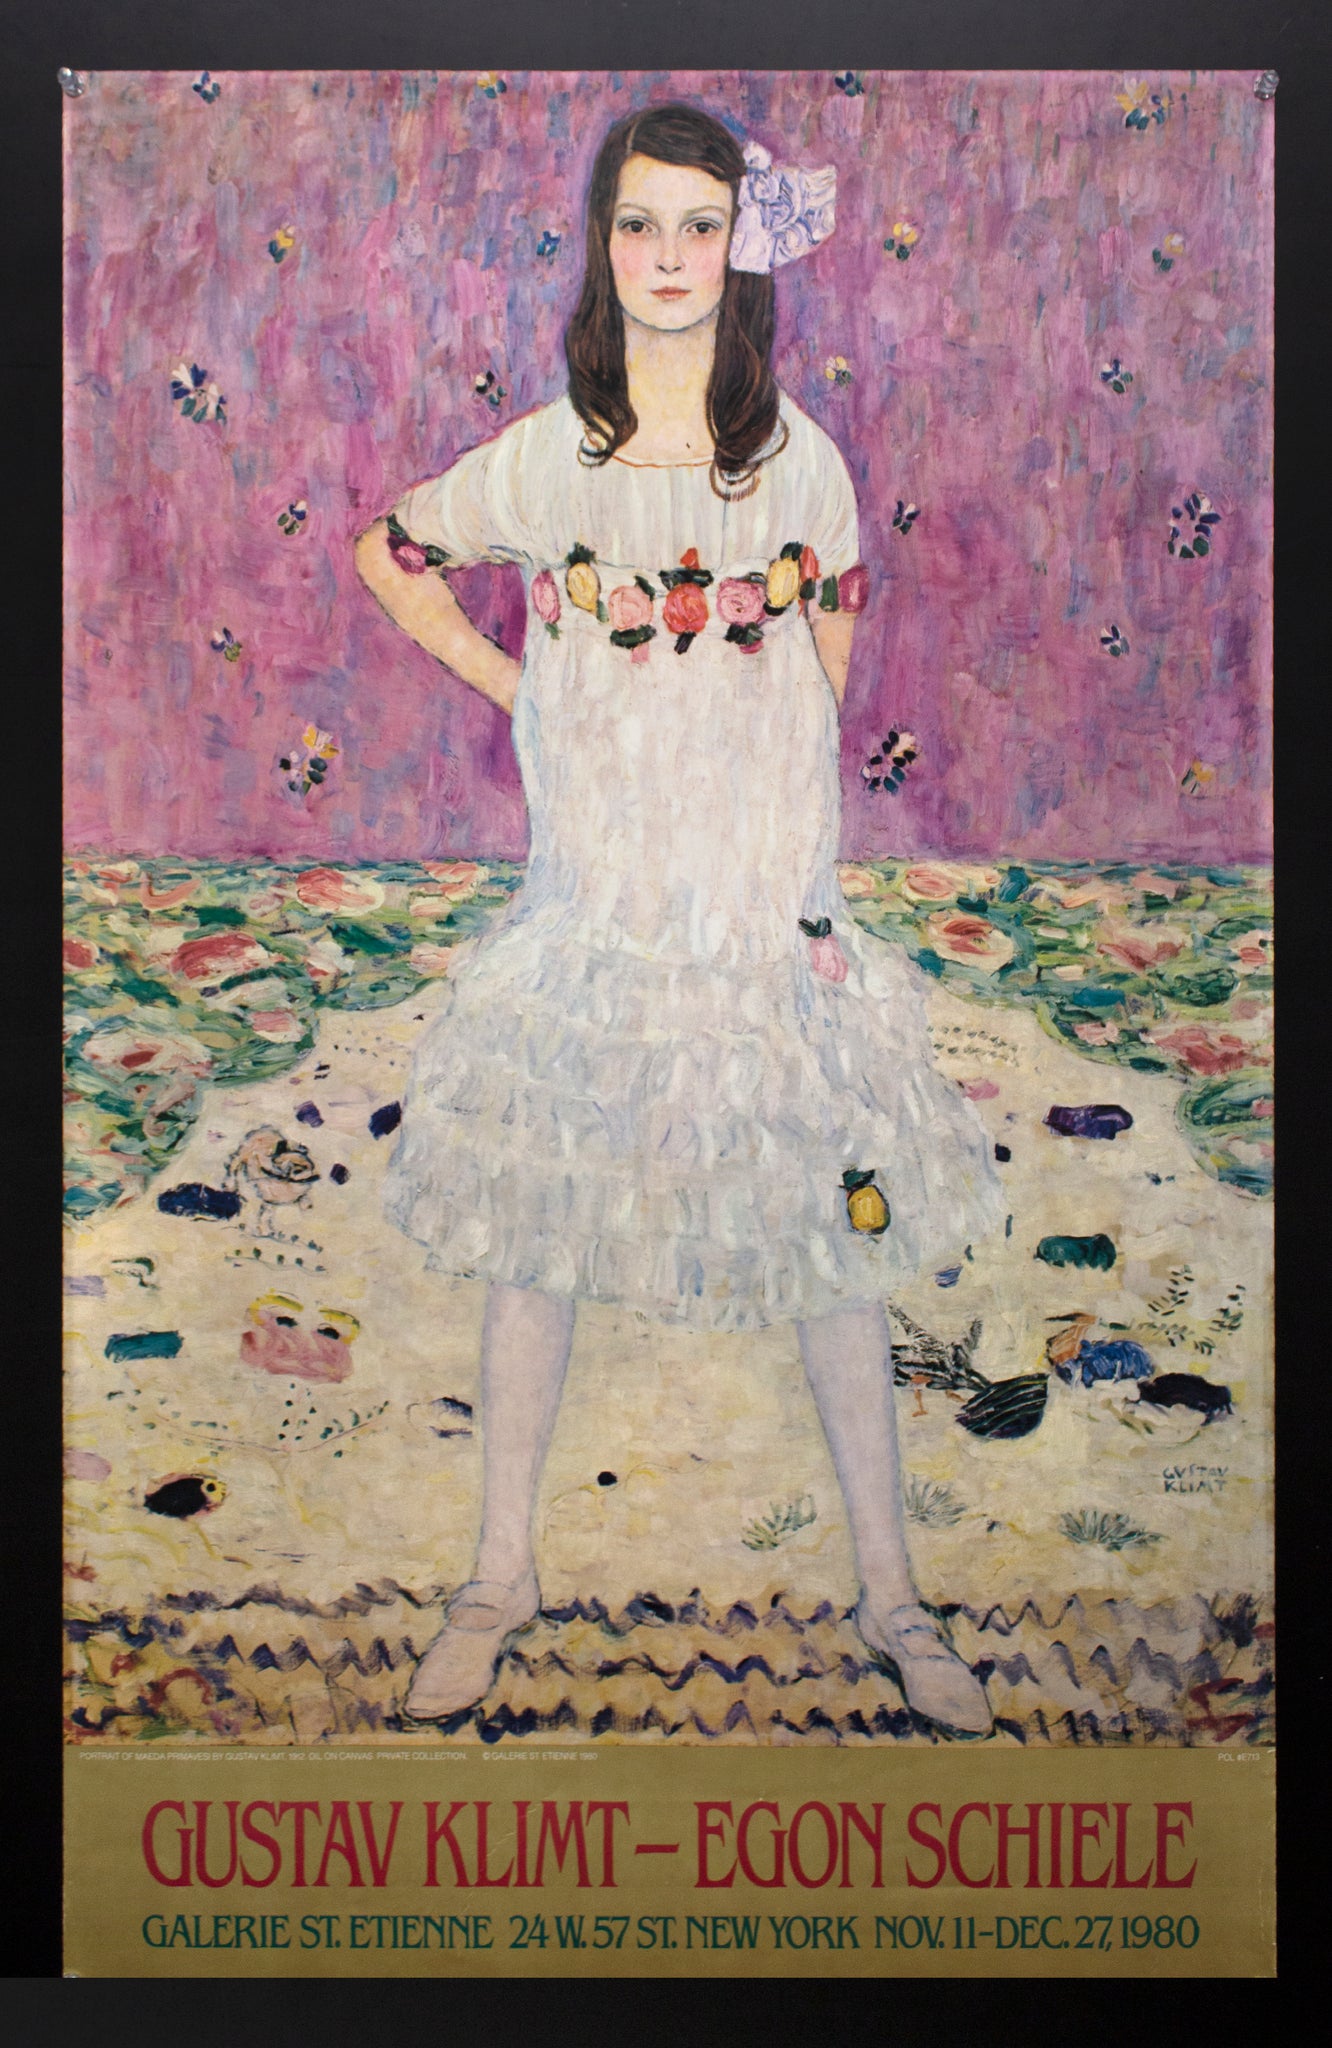 1980 Gustav Klimt Egon Schiele Art Exhibit Galerie St. Etienne